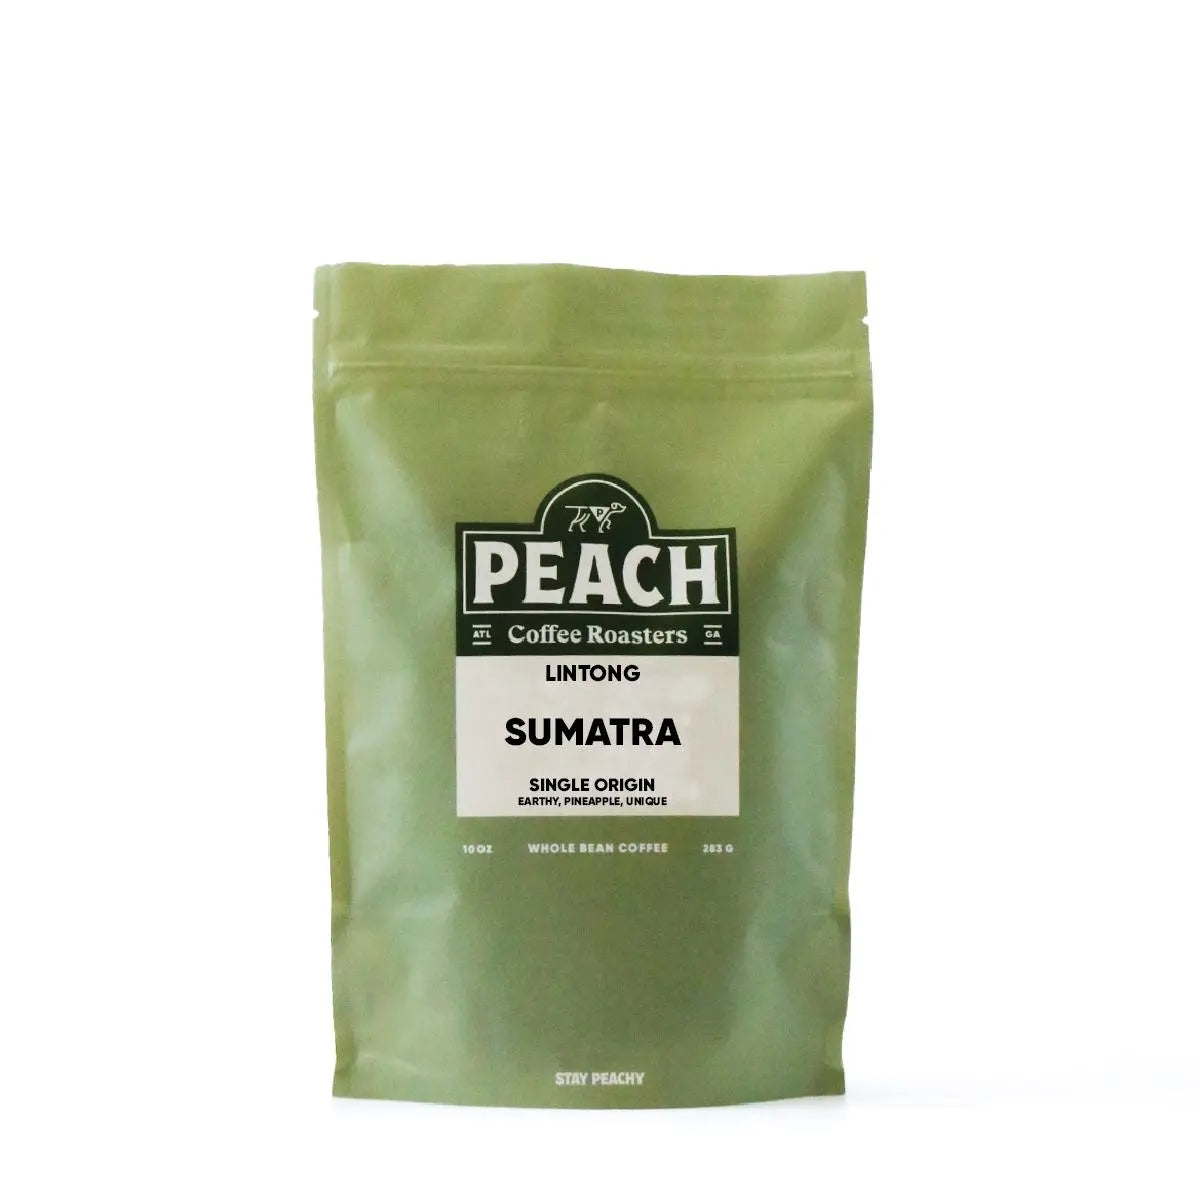 Sumatra, Lintong - Medium Roast Single Origin Peach Coffee Roasters